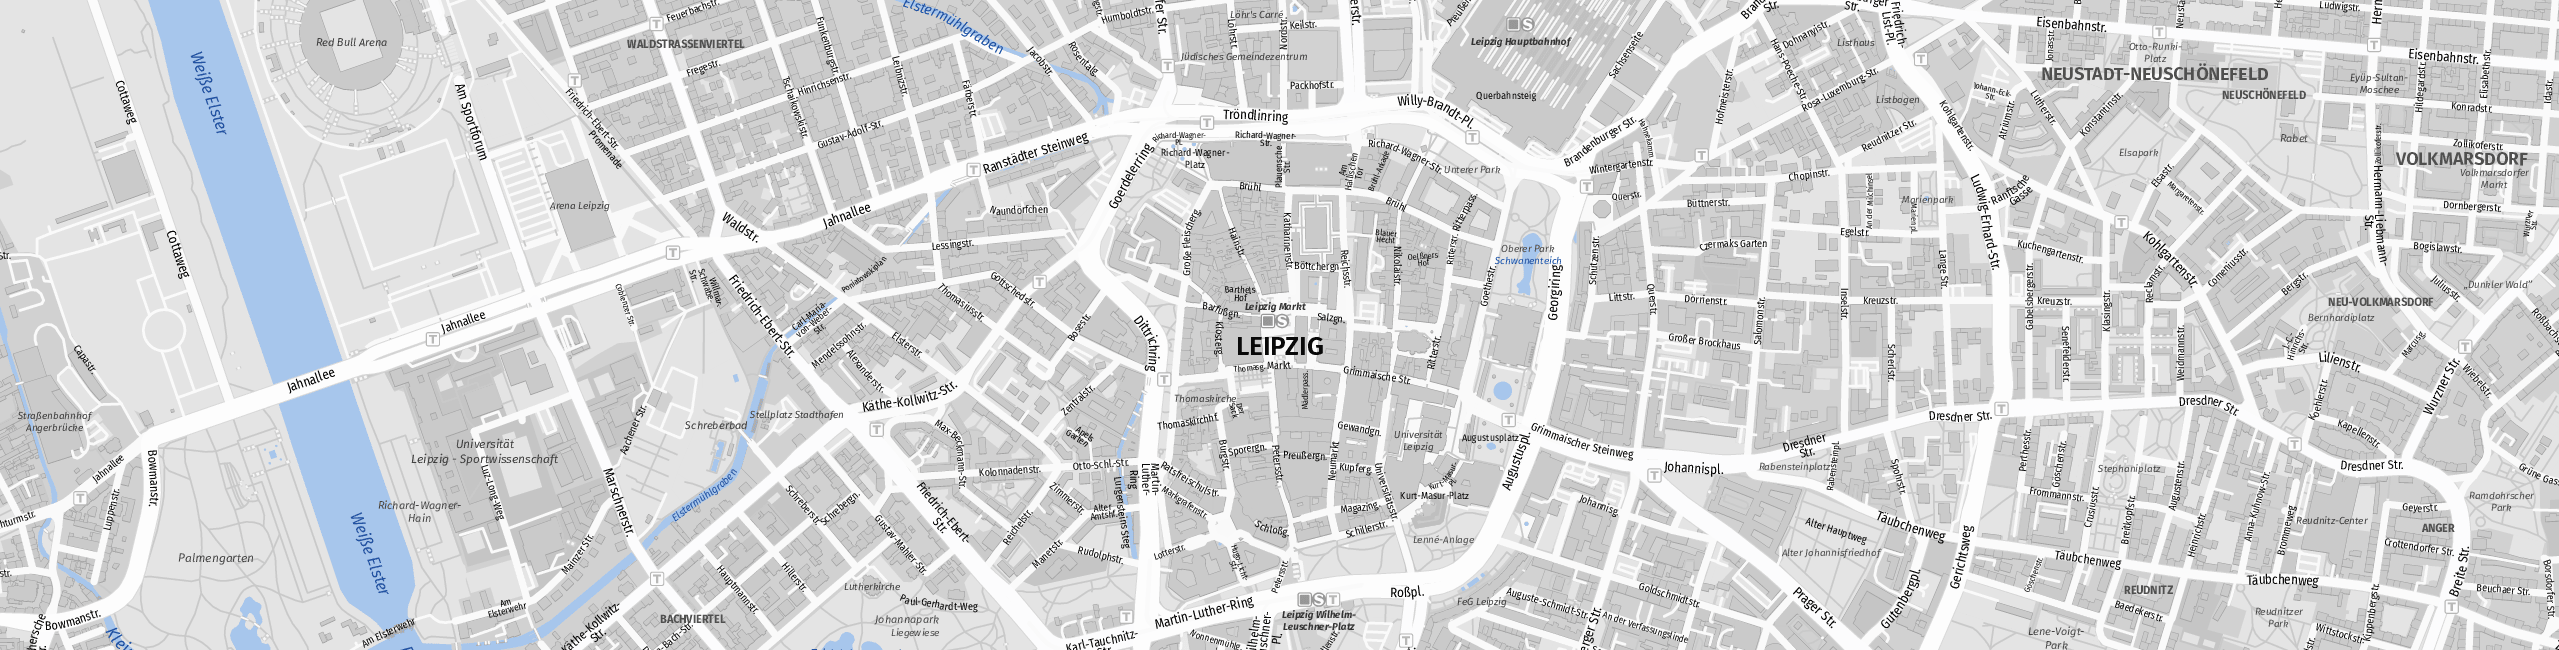 Stadtplan Leipzig zum Downloaden.